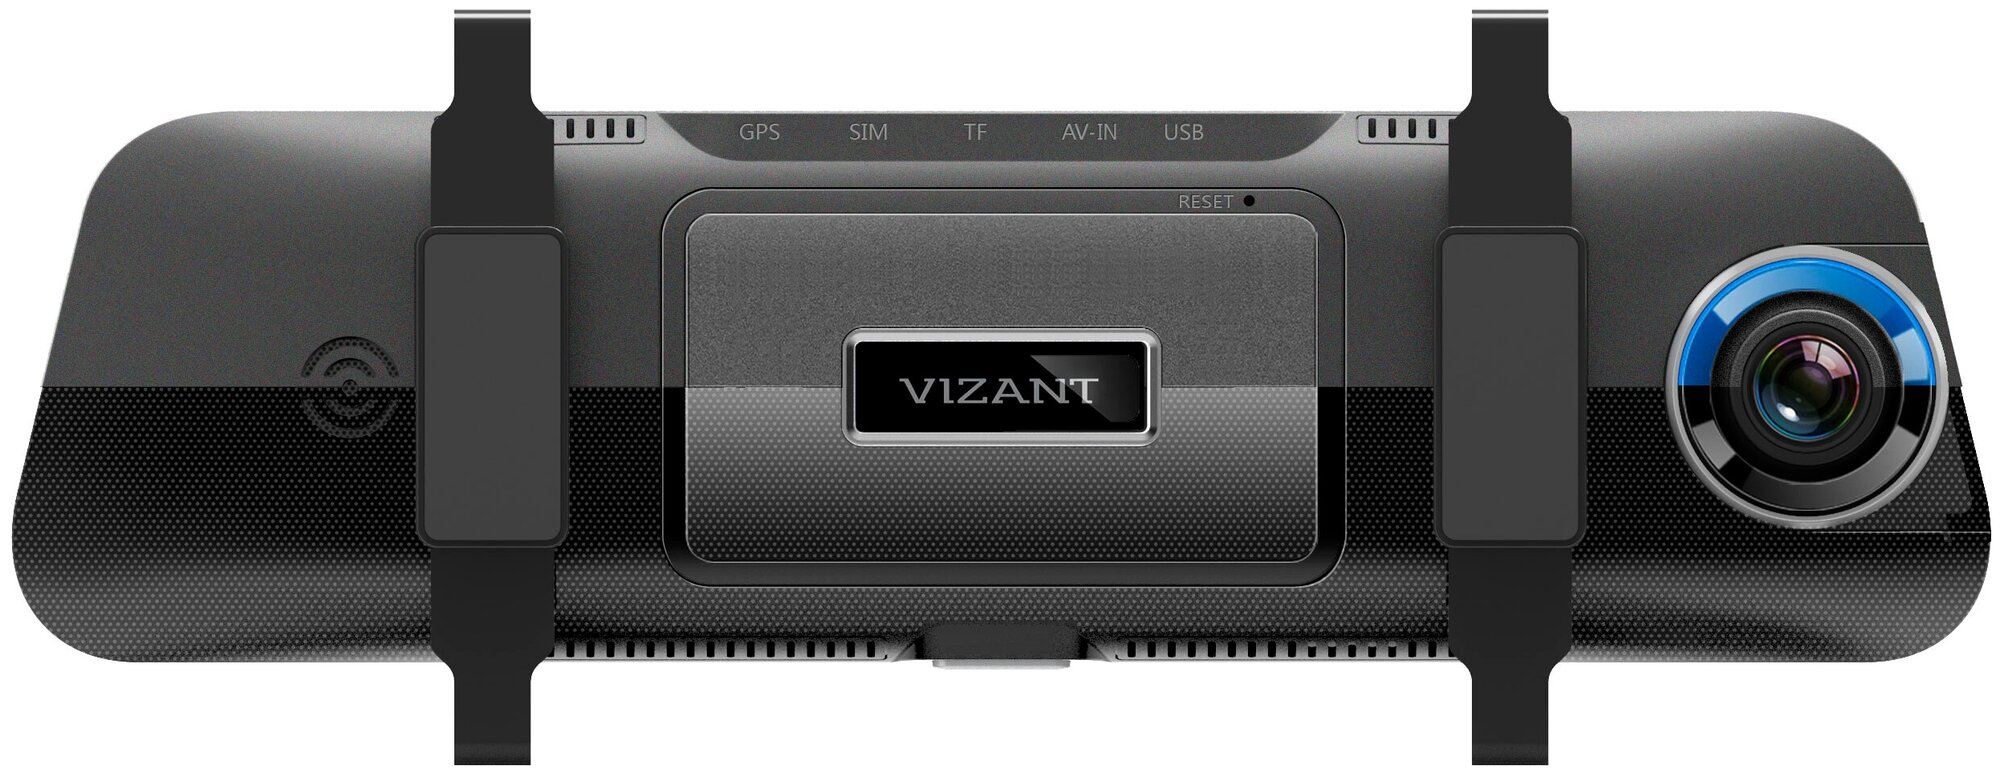 Видеорегистратор Vizant 250 Assist 2 камеры